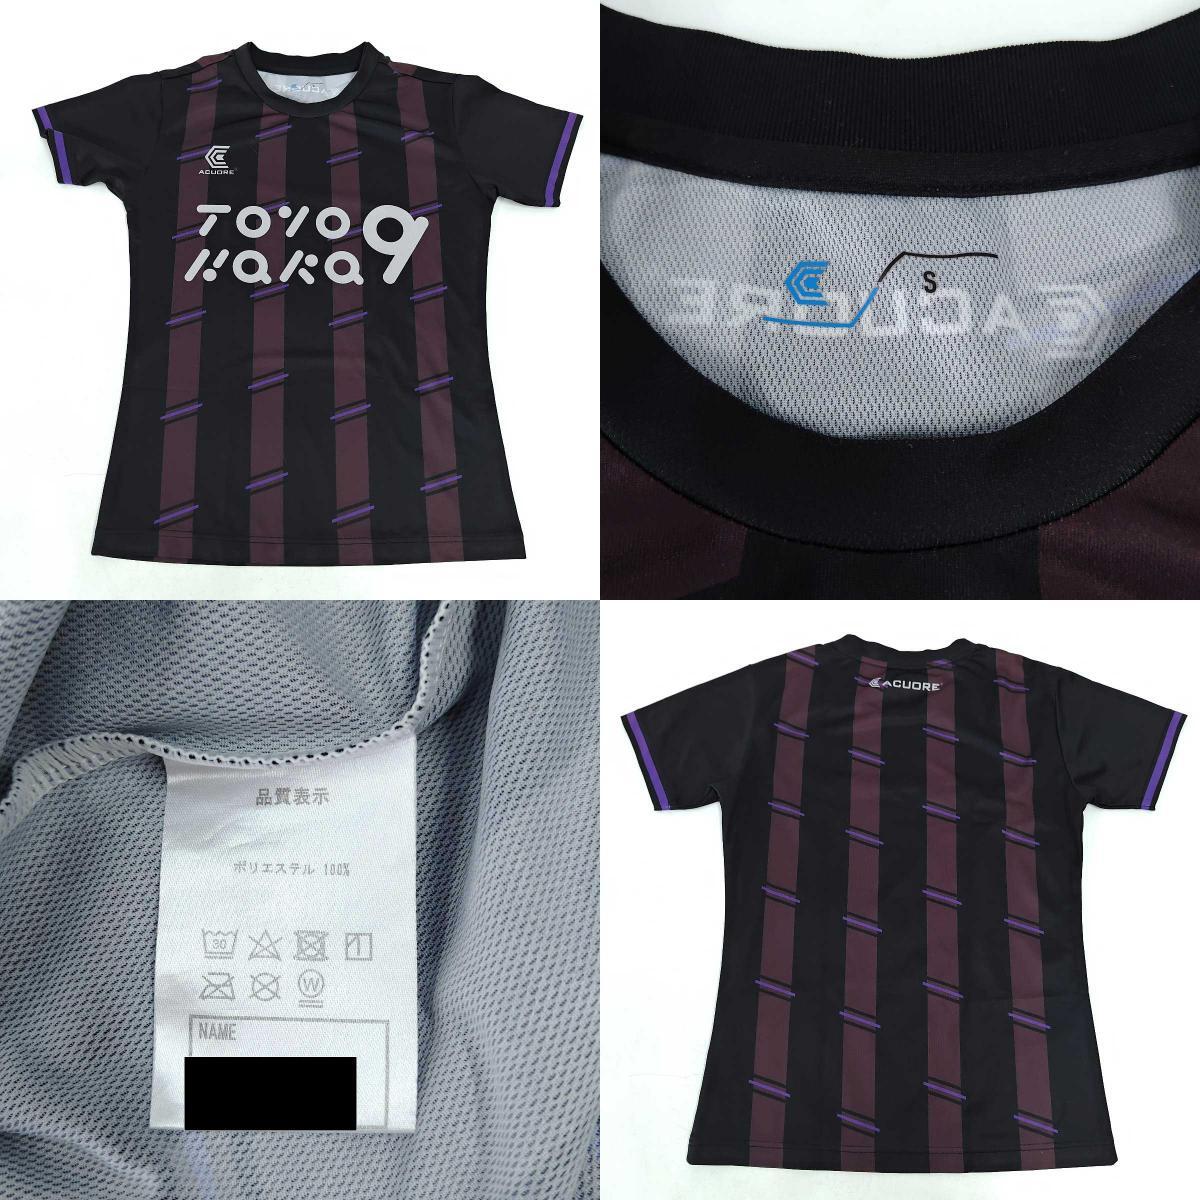 [ б/у ][5 позиций комплект ]sborumeACUORE Umbro dry рубашка pra рубашка шорты S/150 Kids Junior футбол футзал одежда 